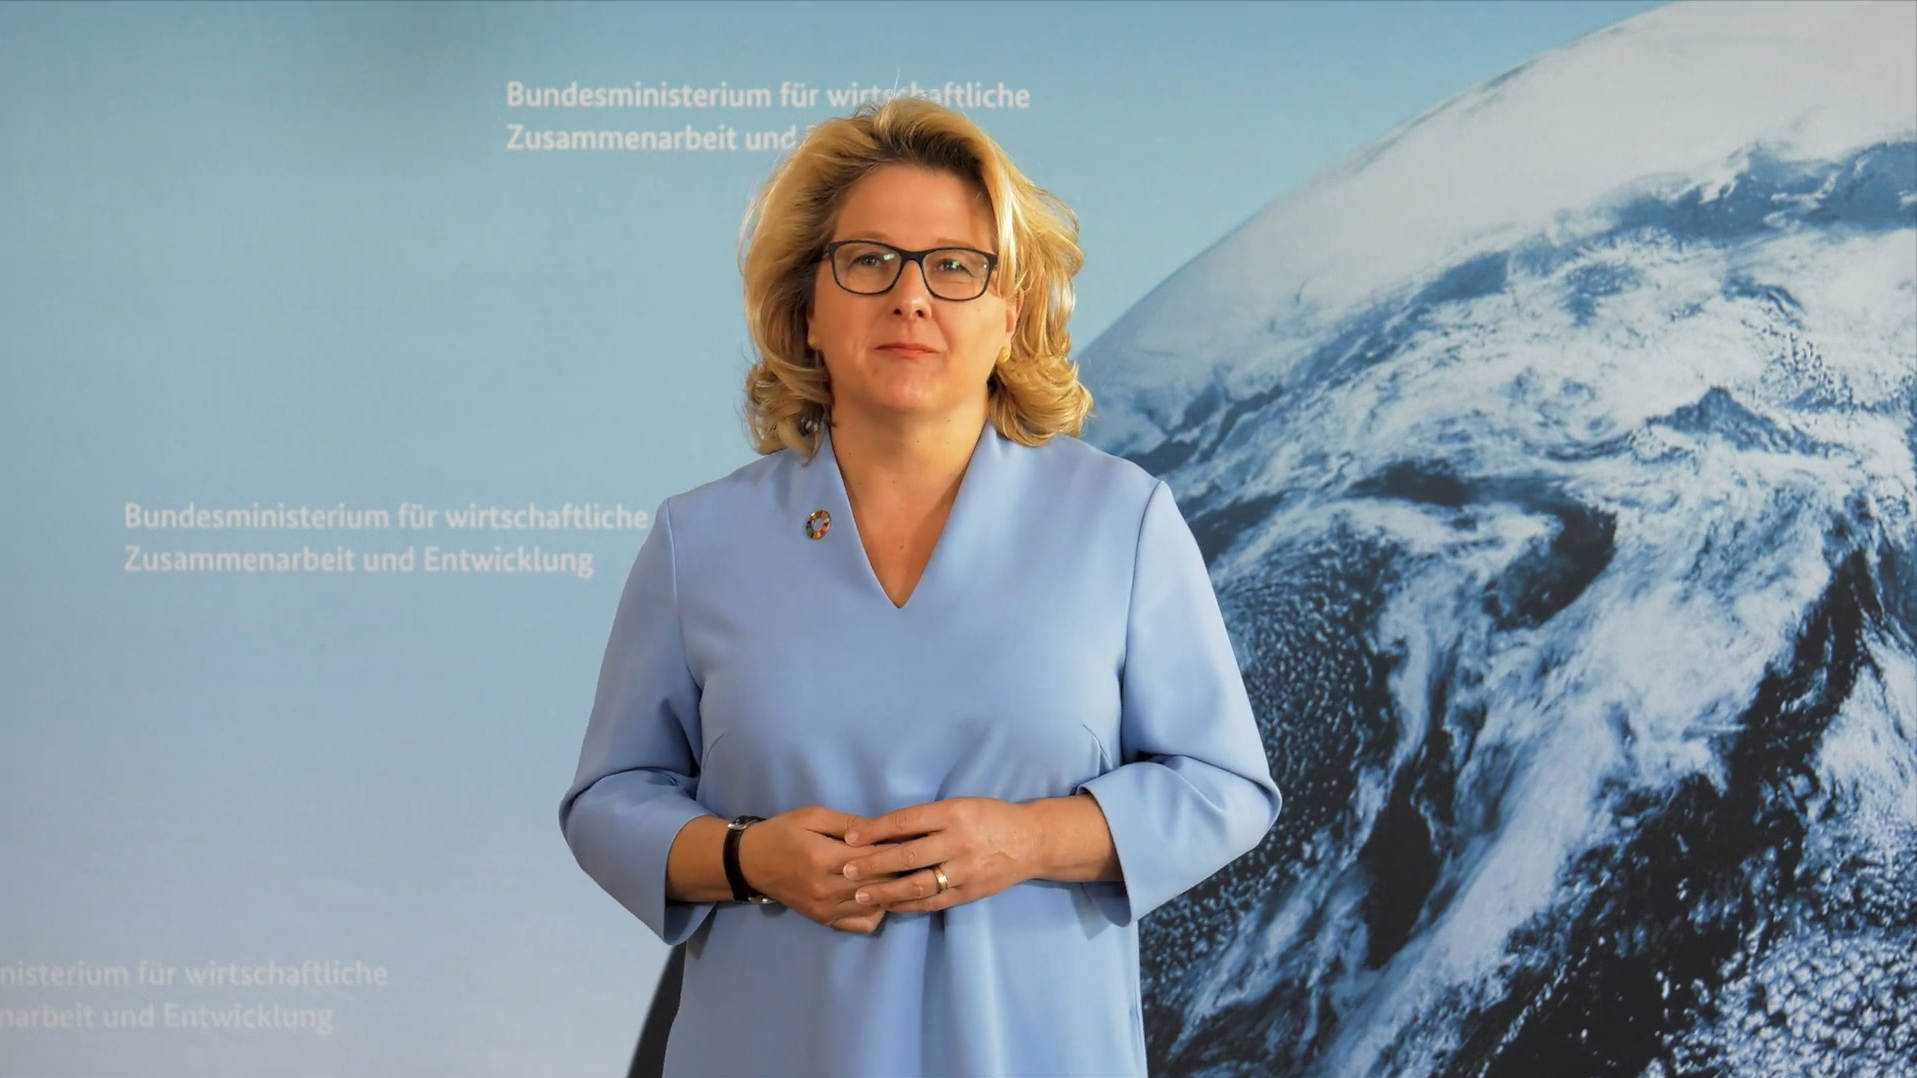 Standbild aus dem Video "4 Fragen an Bundesministerin Svenja Schulze"